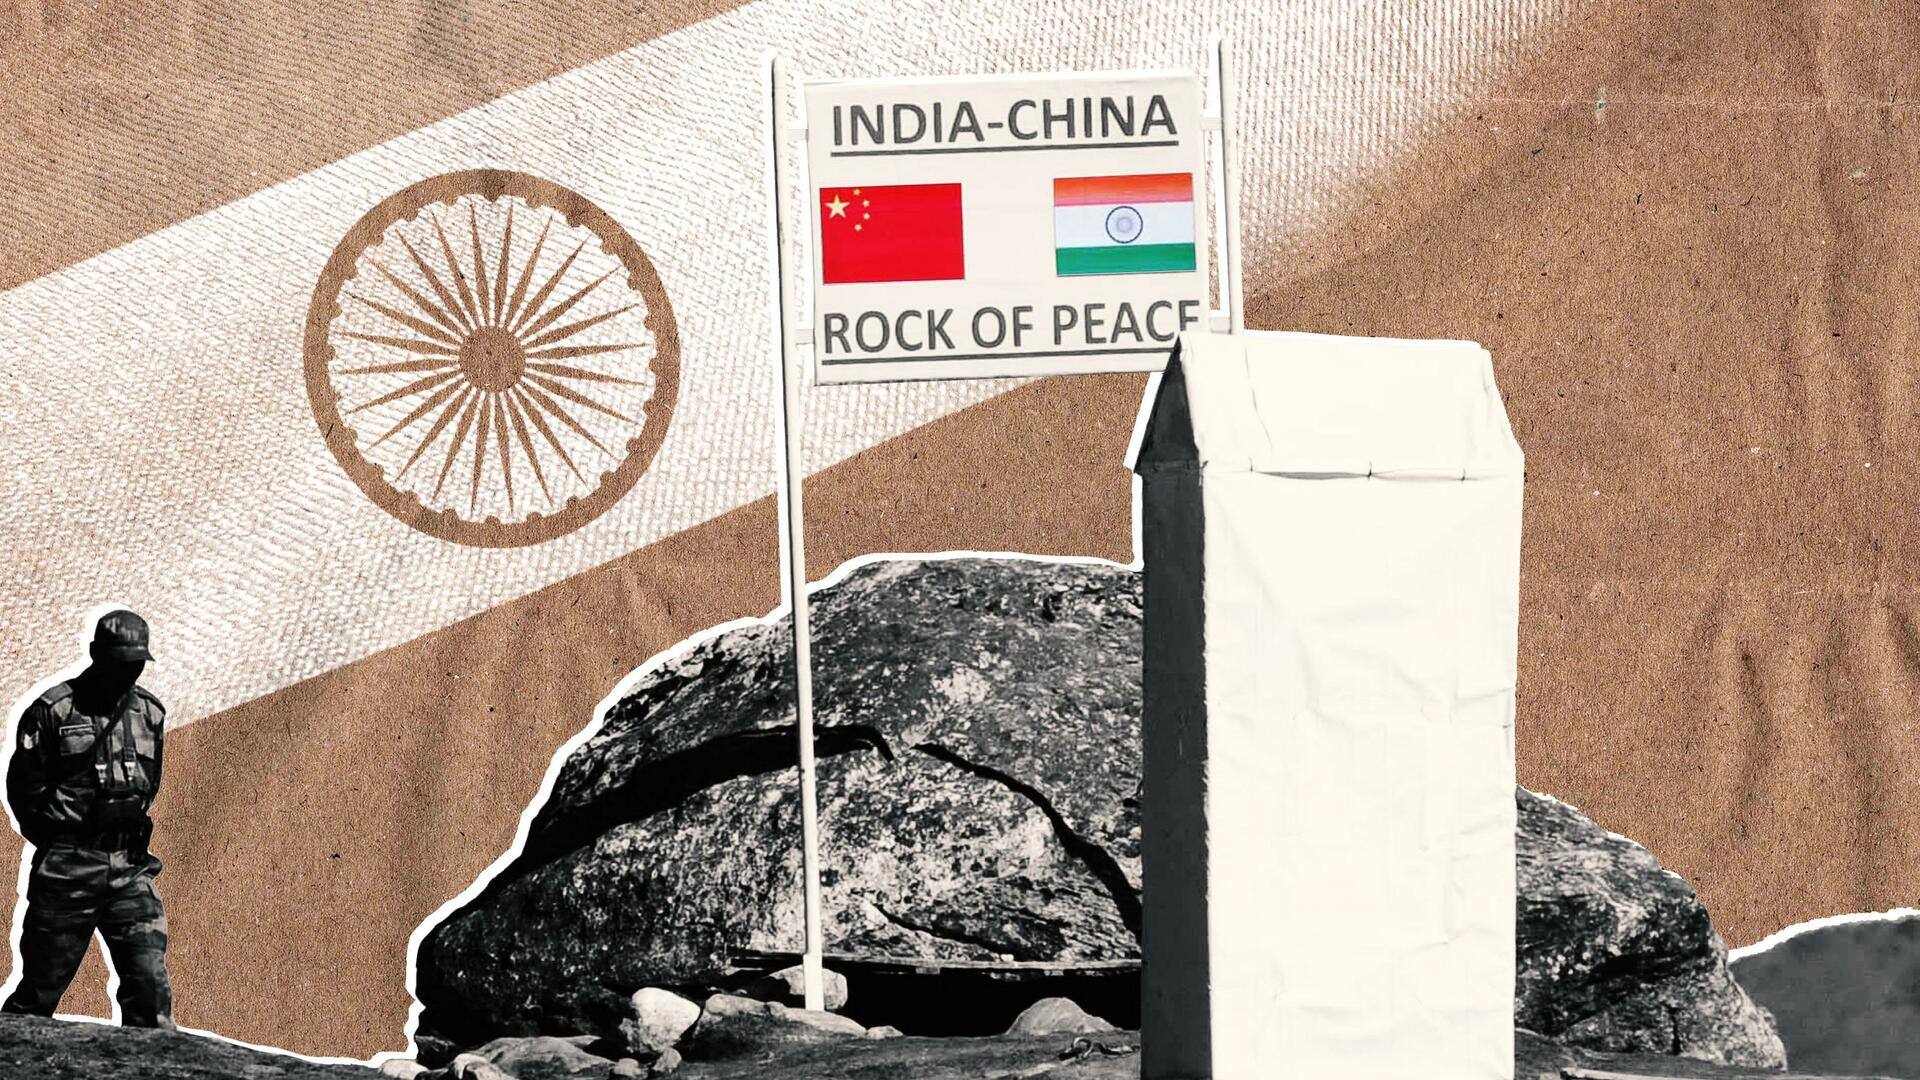 #NewsBytesExplainer: अरुणाचल प्रदेश को लेकर भारत-चीन के बीच क्या विवाद है?